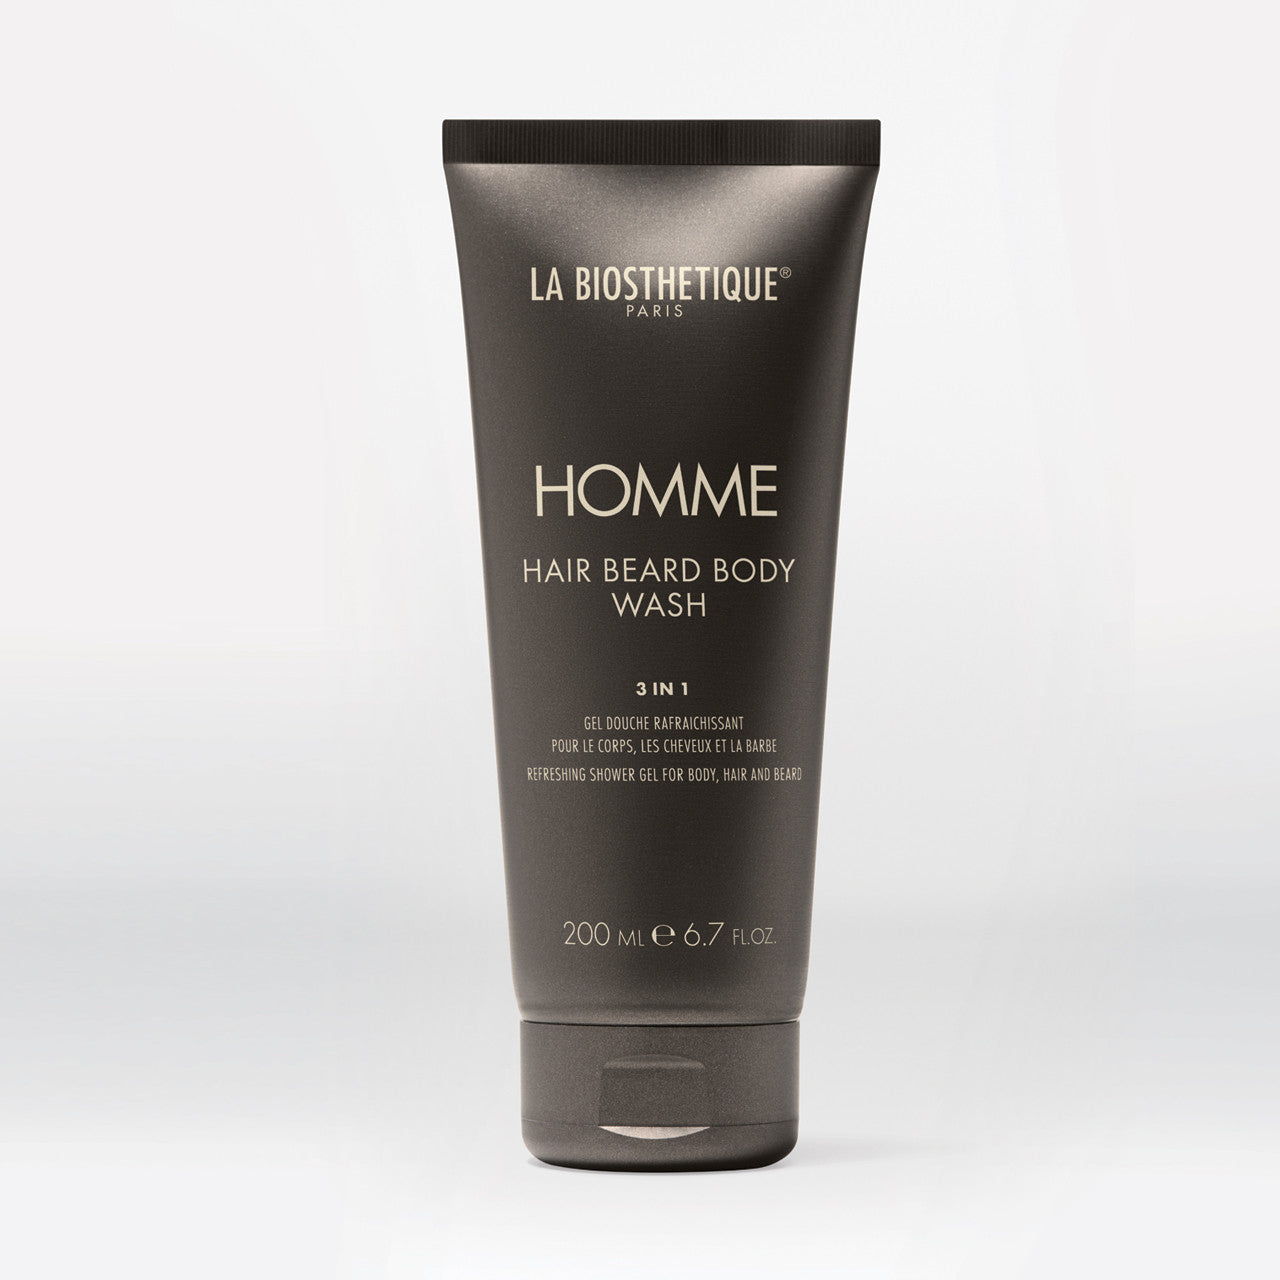 La Biosthetique's Homme Hair Beard Body Wash - 3 in 1